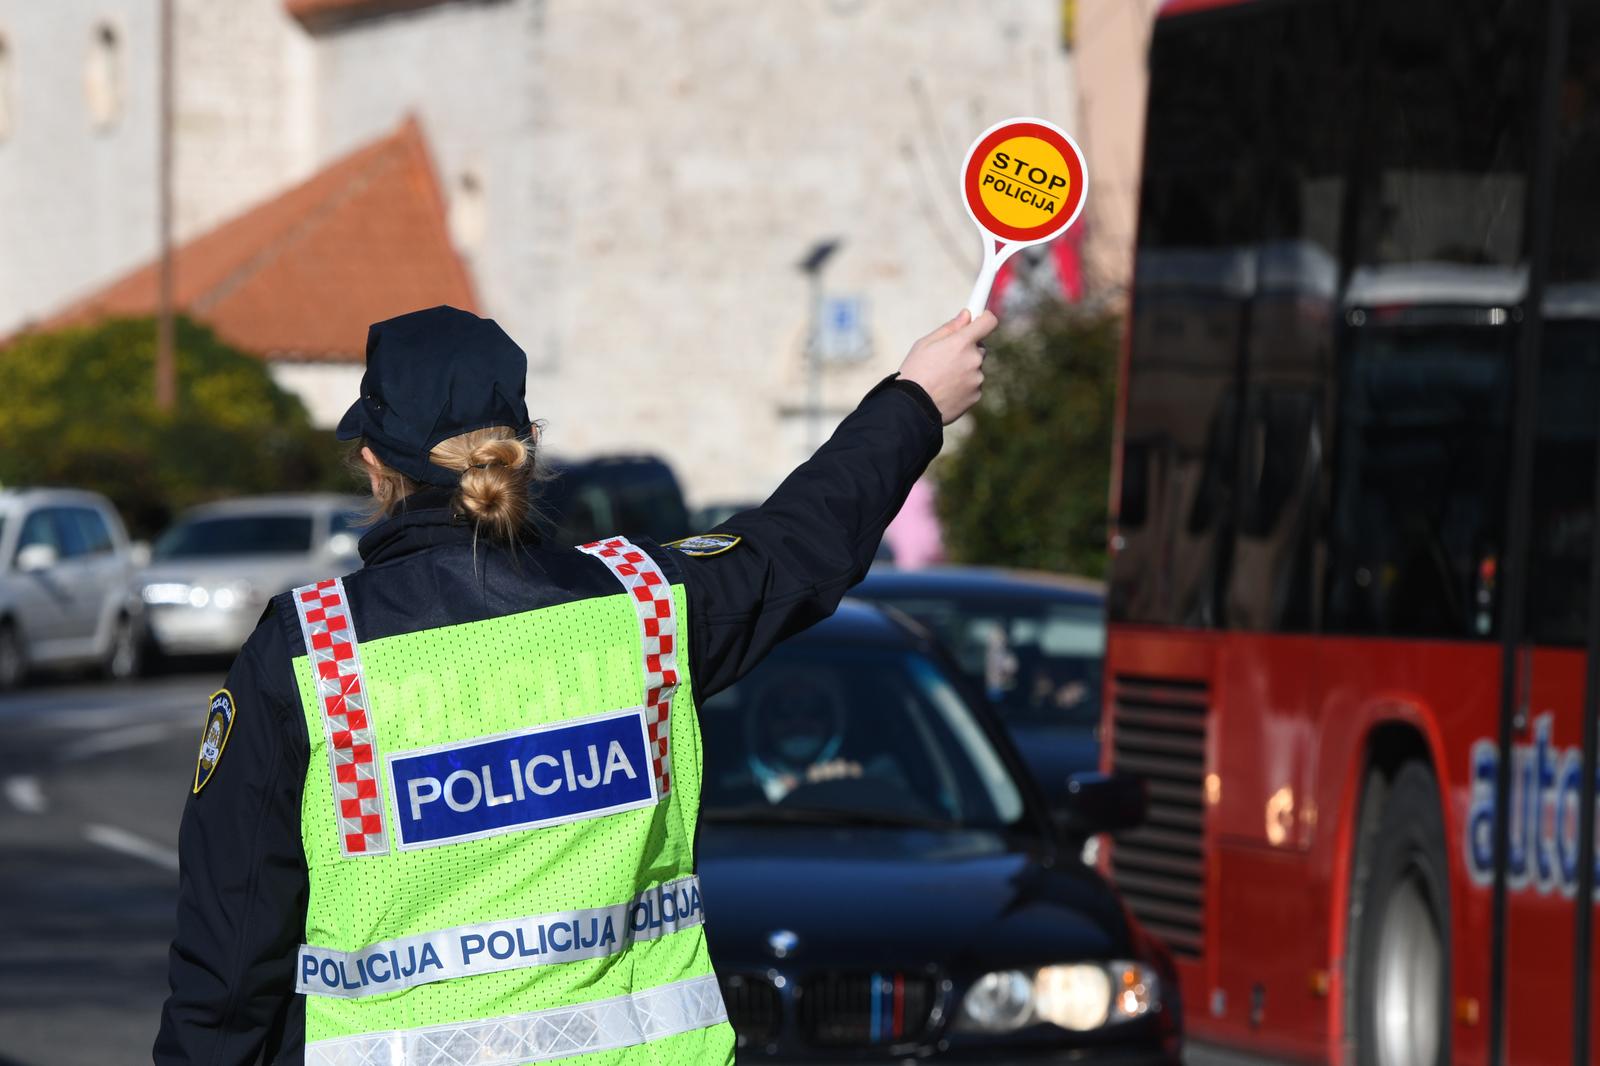 08.02.2022., Sibenik - Policijska akcija usmjerena na pjesake i vozila provodi se tijekom jutra na podrucju grada Sibenika. Photo: Hrvoje Jelavic/PIXSELL